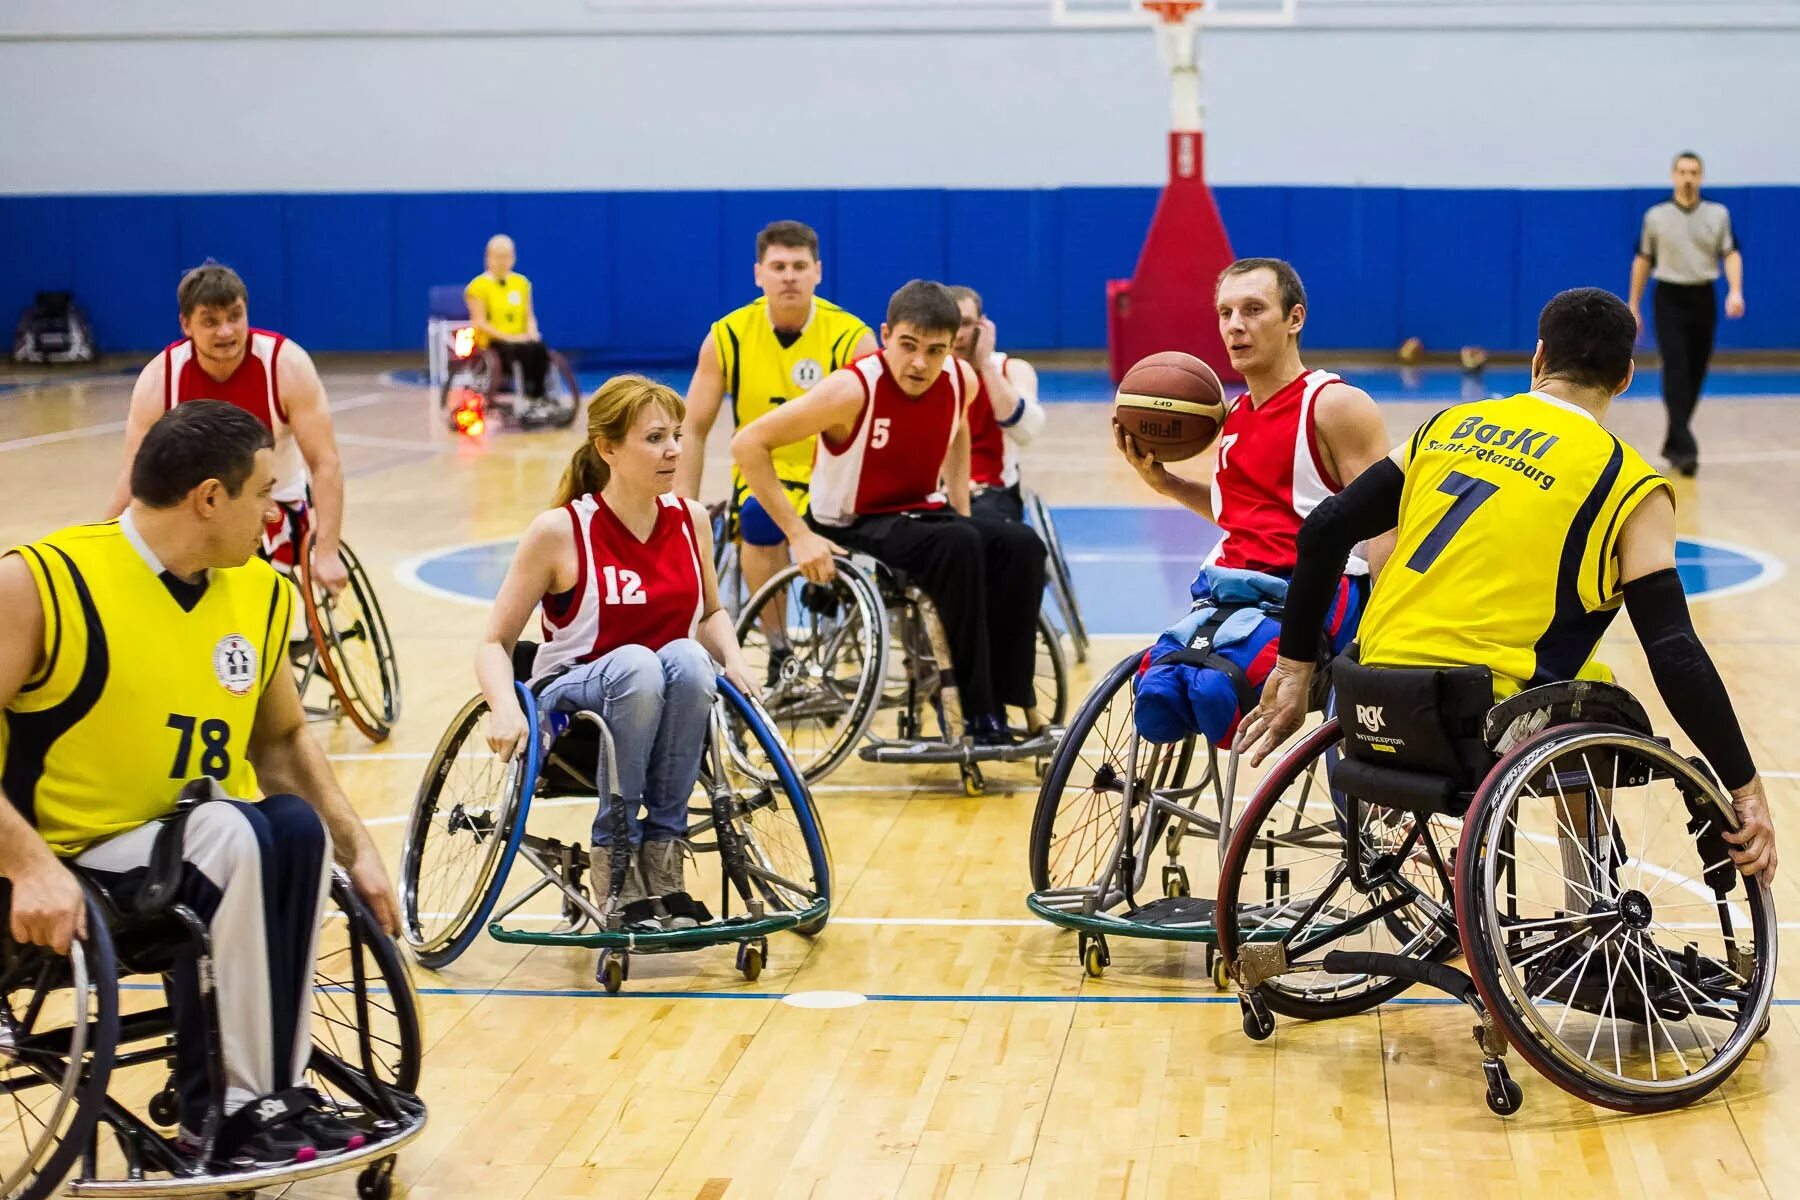 Конкурсы для овз. Спорт для инвалидов. Баскетбол на инвалидных колясках. Спорт для людей с ограниченными возможностями. Спортивные соревнования для инвалидов.